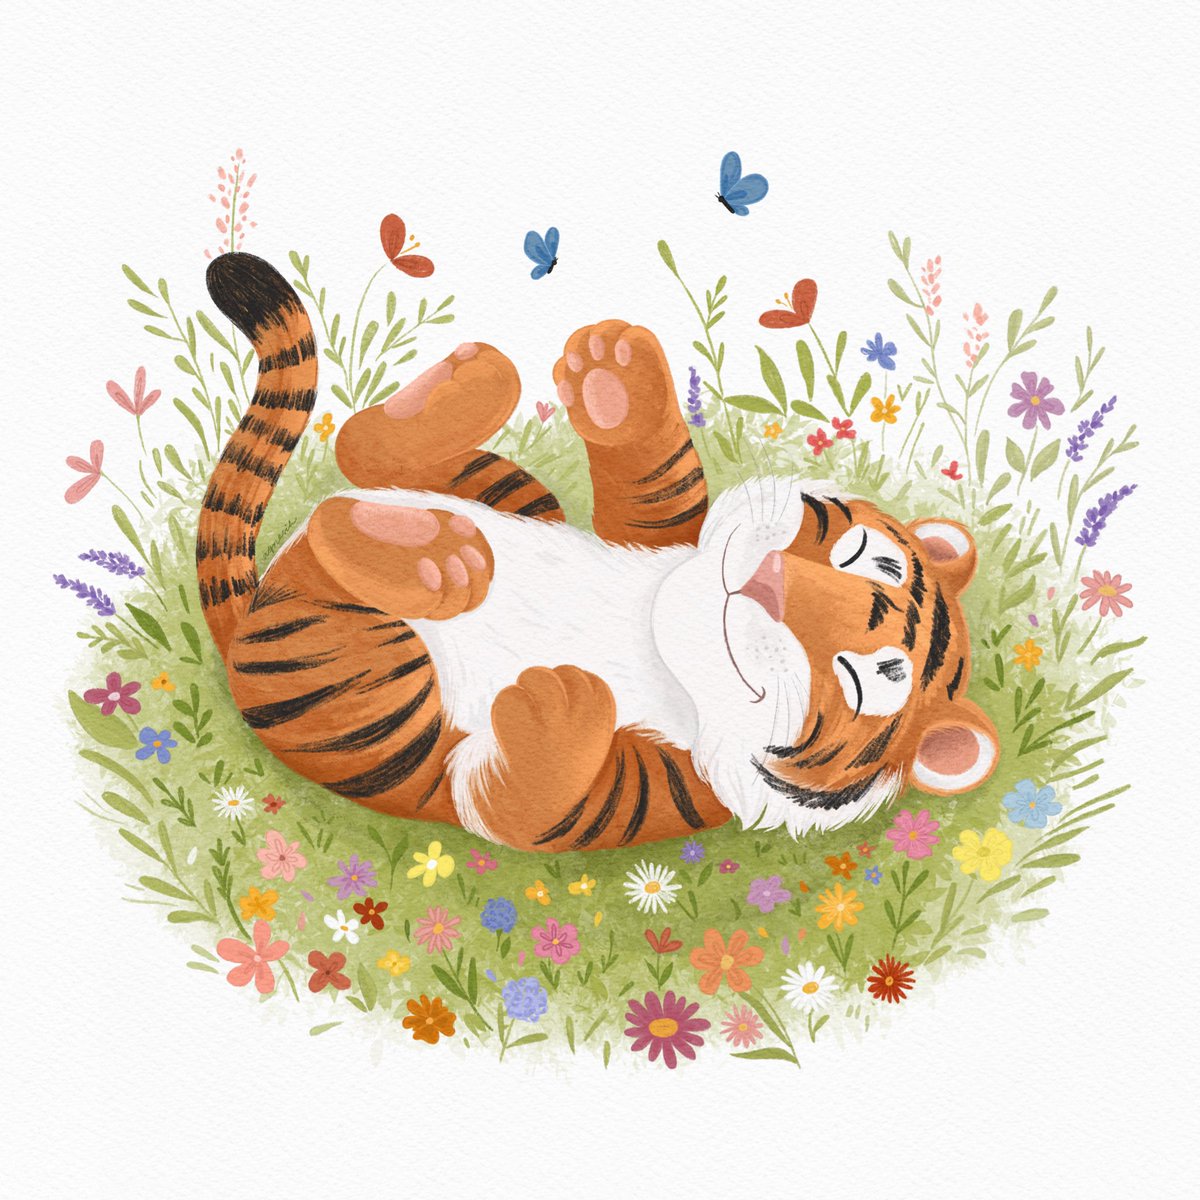 Cytując @skr0mnosc: 
Tygrysek na łące pełnej kwiatów 🐯🌺🌷🌸🌹🌱

#EmojiChallenge